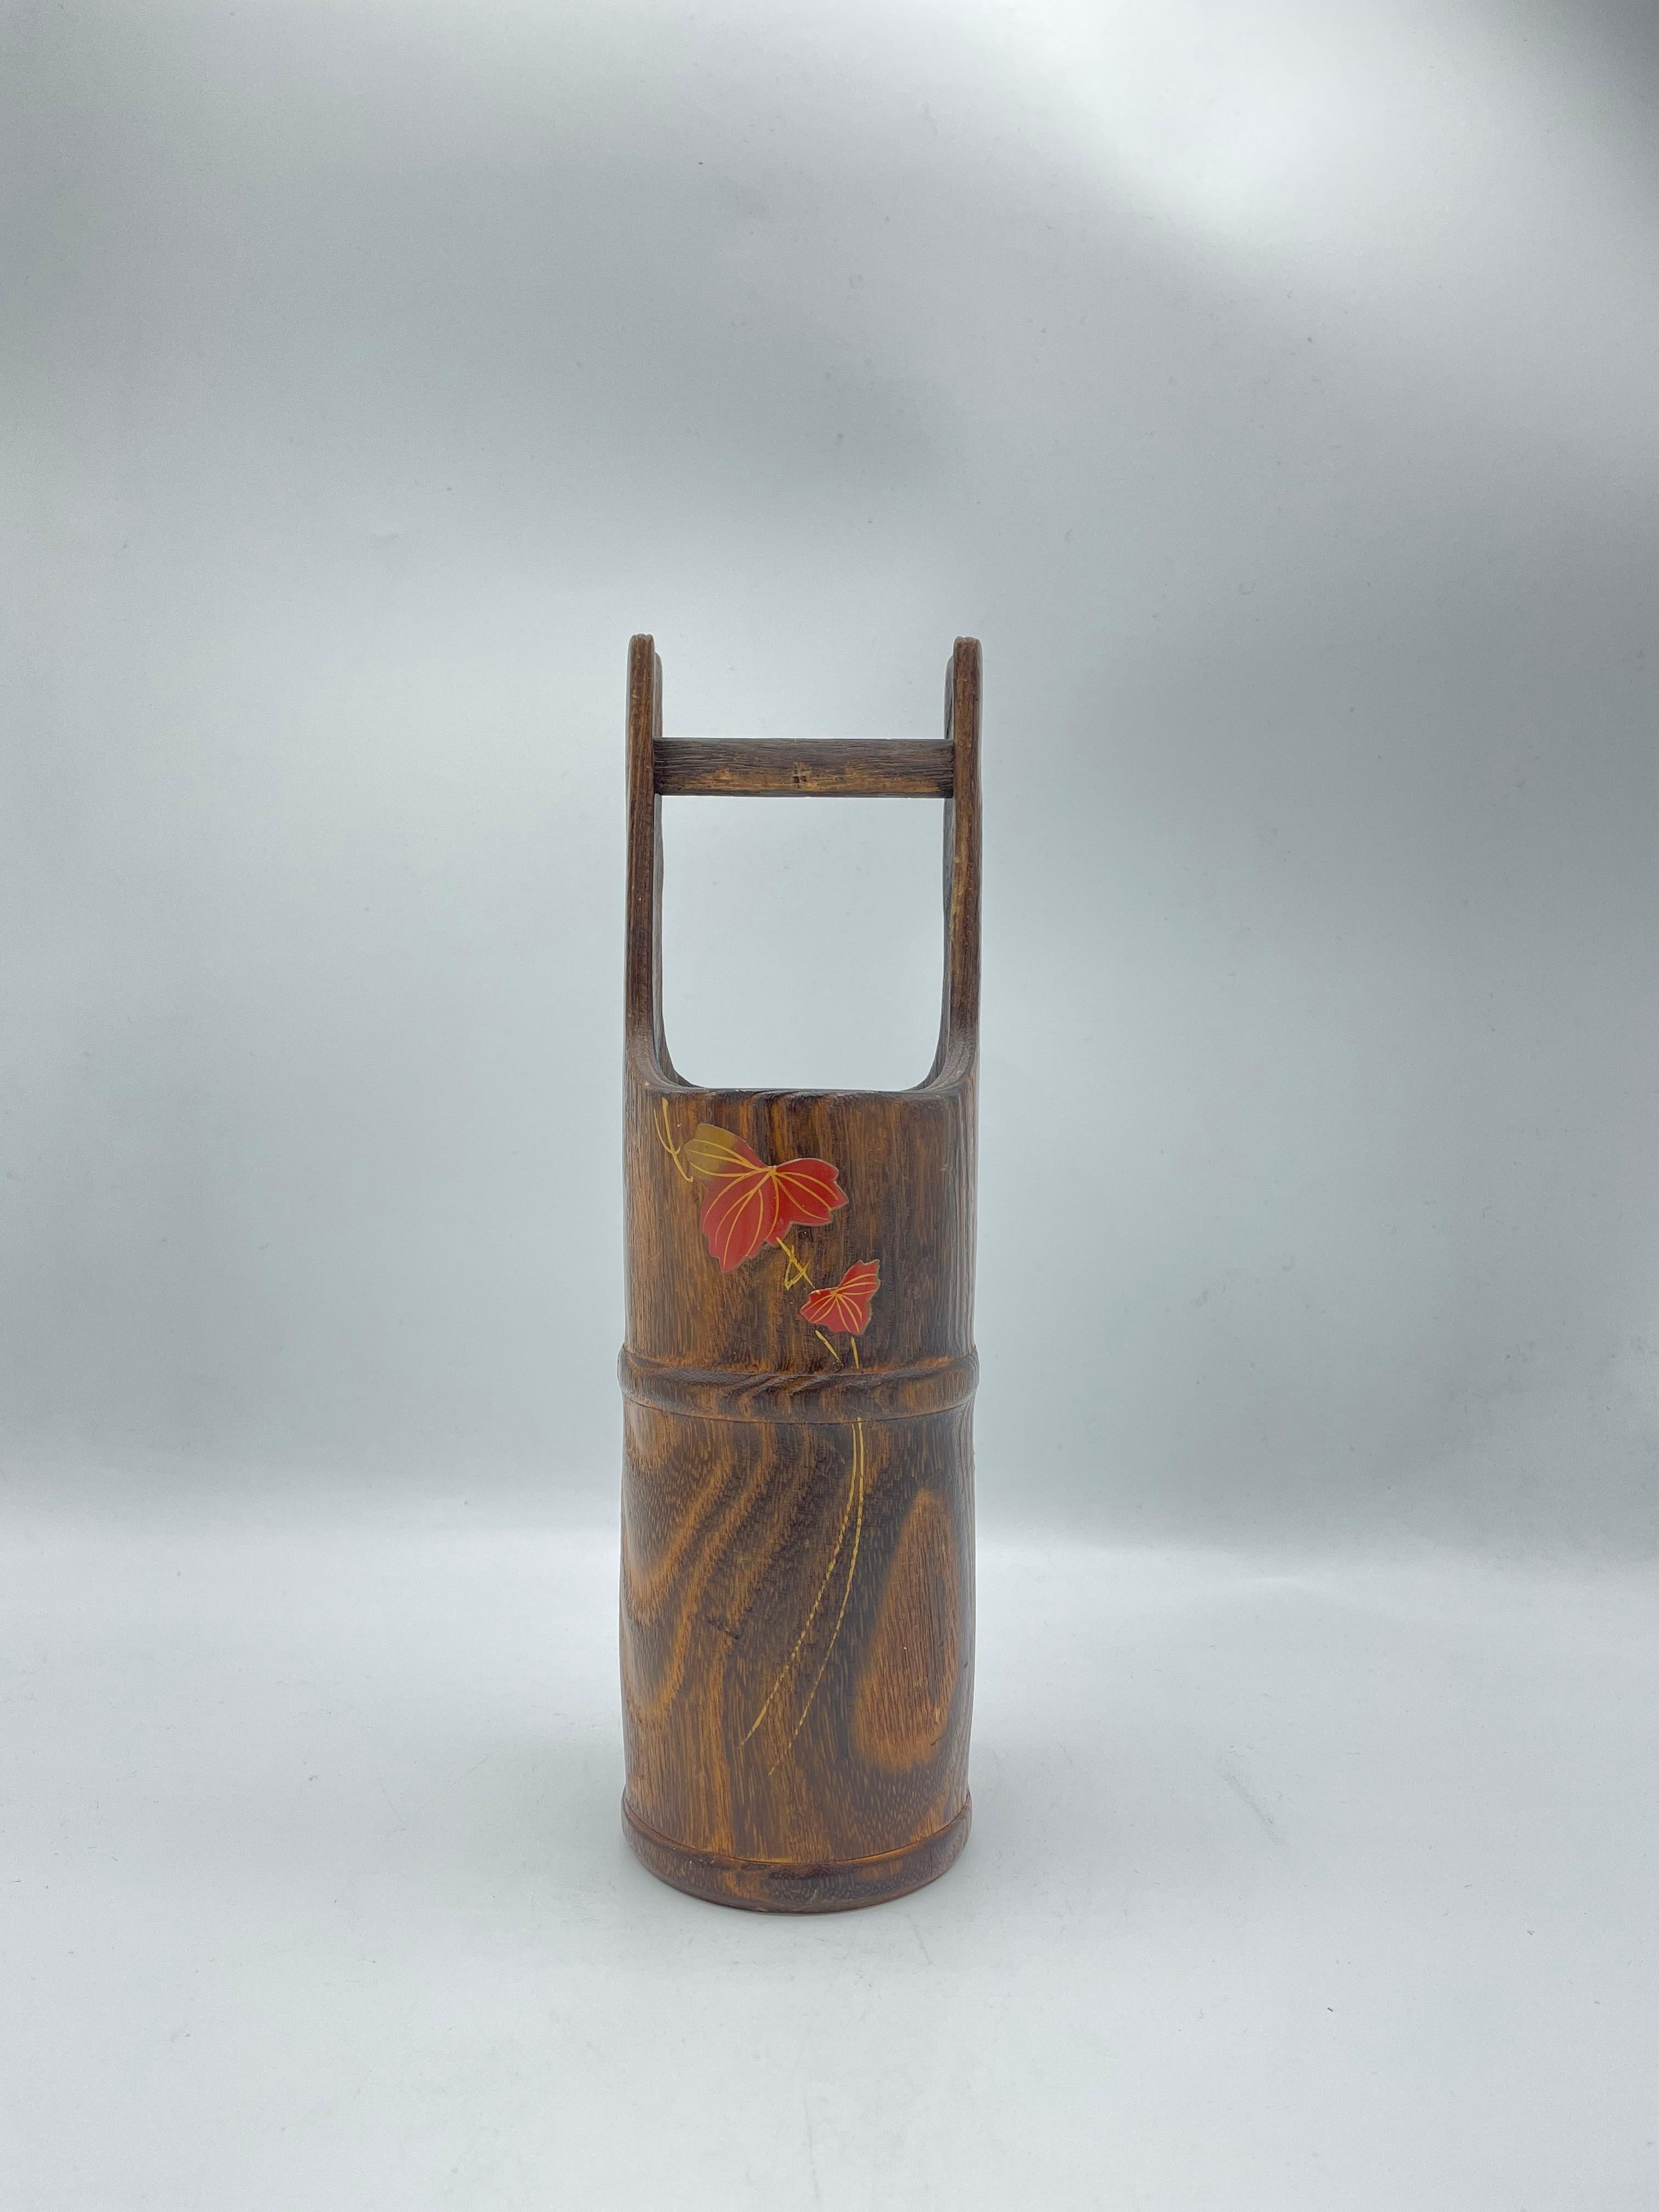 Dies ist eine Blumenvase, die in Japan in den 1970er Jahren in der Showa-Ära hergestellt wurde.
Sie besteht aus Holz und im Inneren befindet sich ein Metall, in das Wasser eingefüllt werden kann.
Es kann als Blumenvase und auch als Dekoration